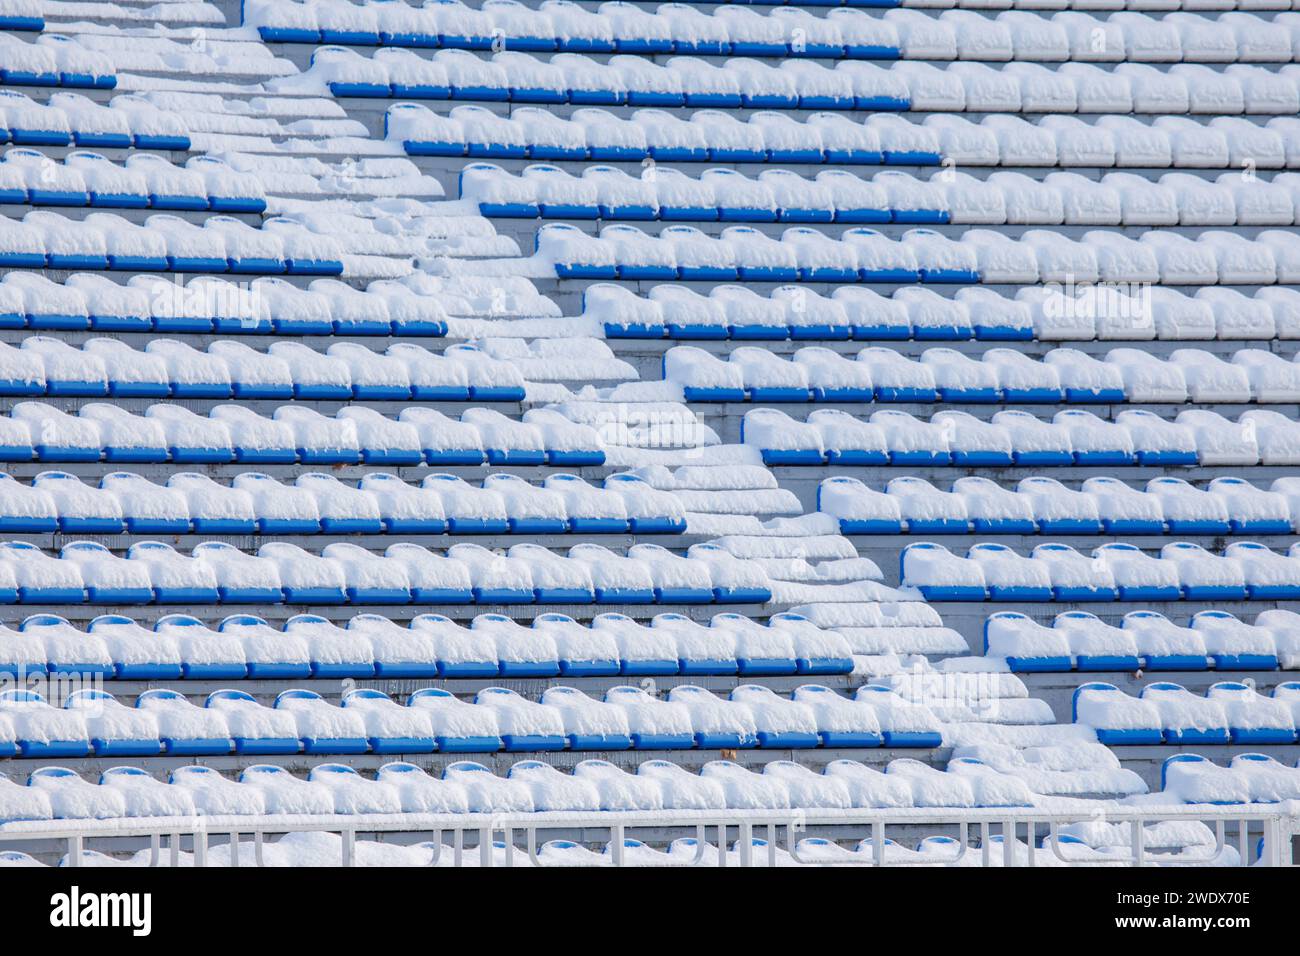 i sedili delle tribune dello stadio sono coperti di neve. Foto di alta qualità Foto Stock